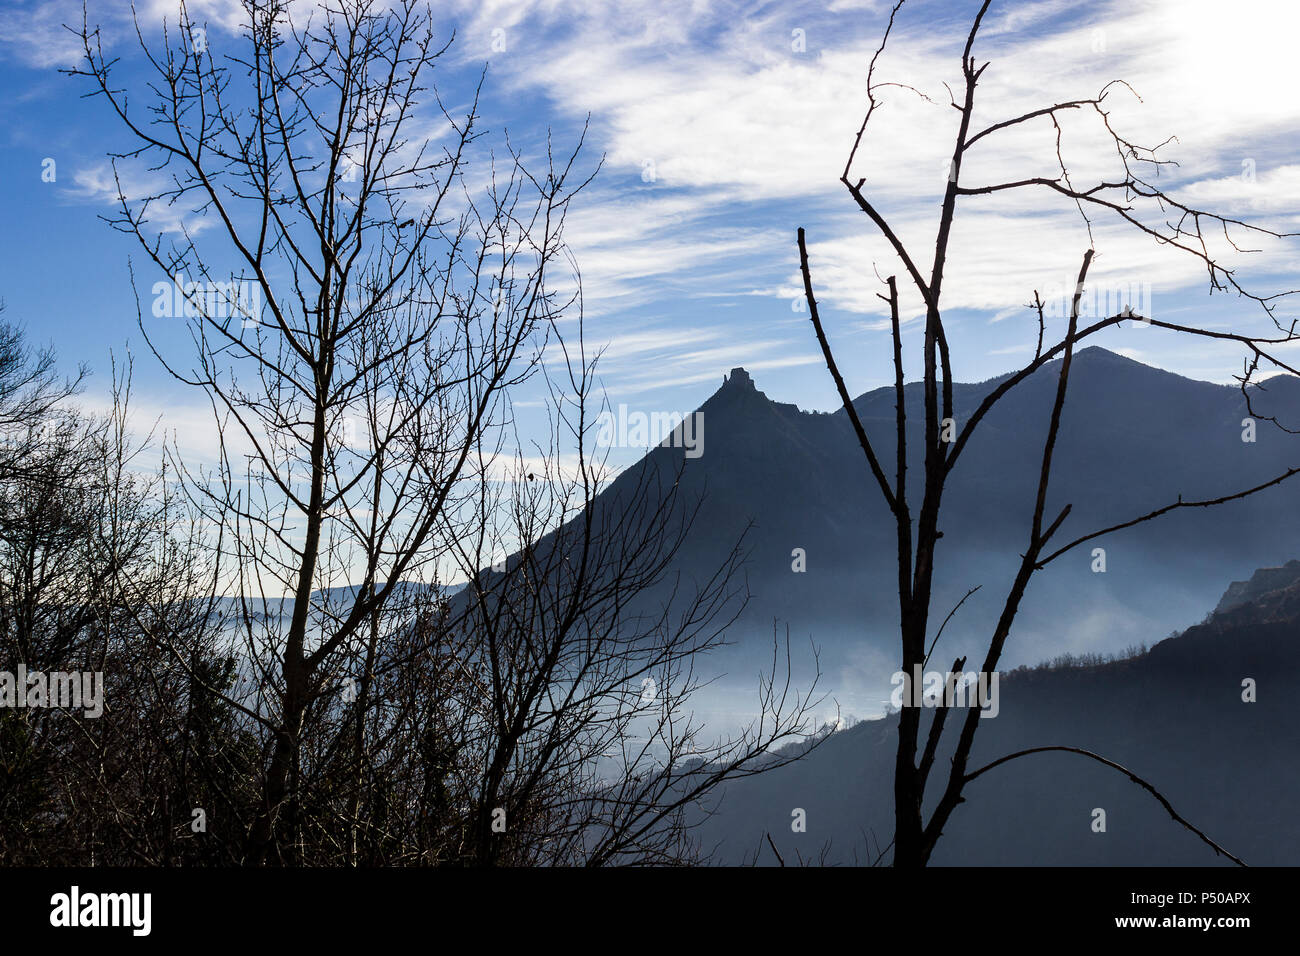 View of Condove in Val di Susa Stock Photo